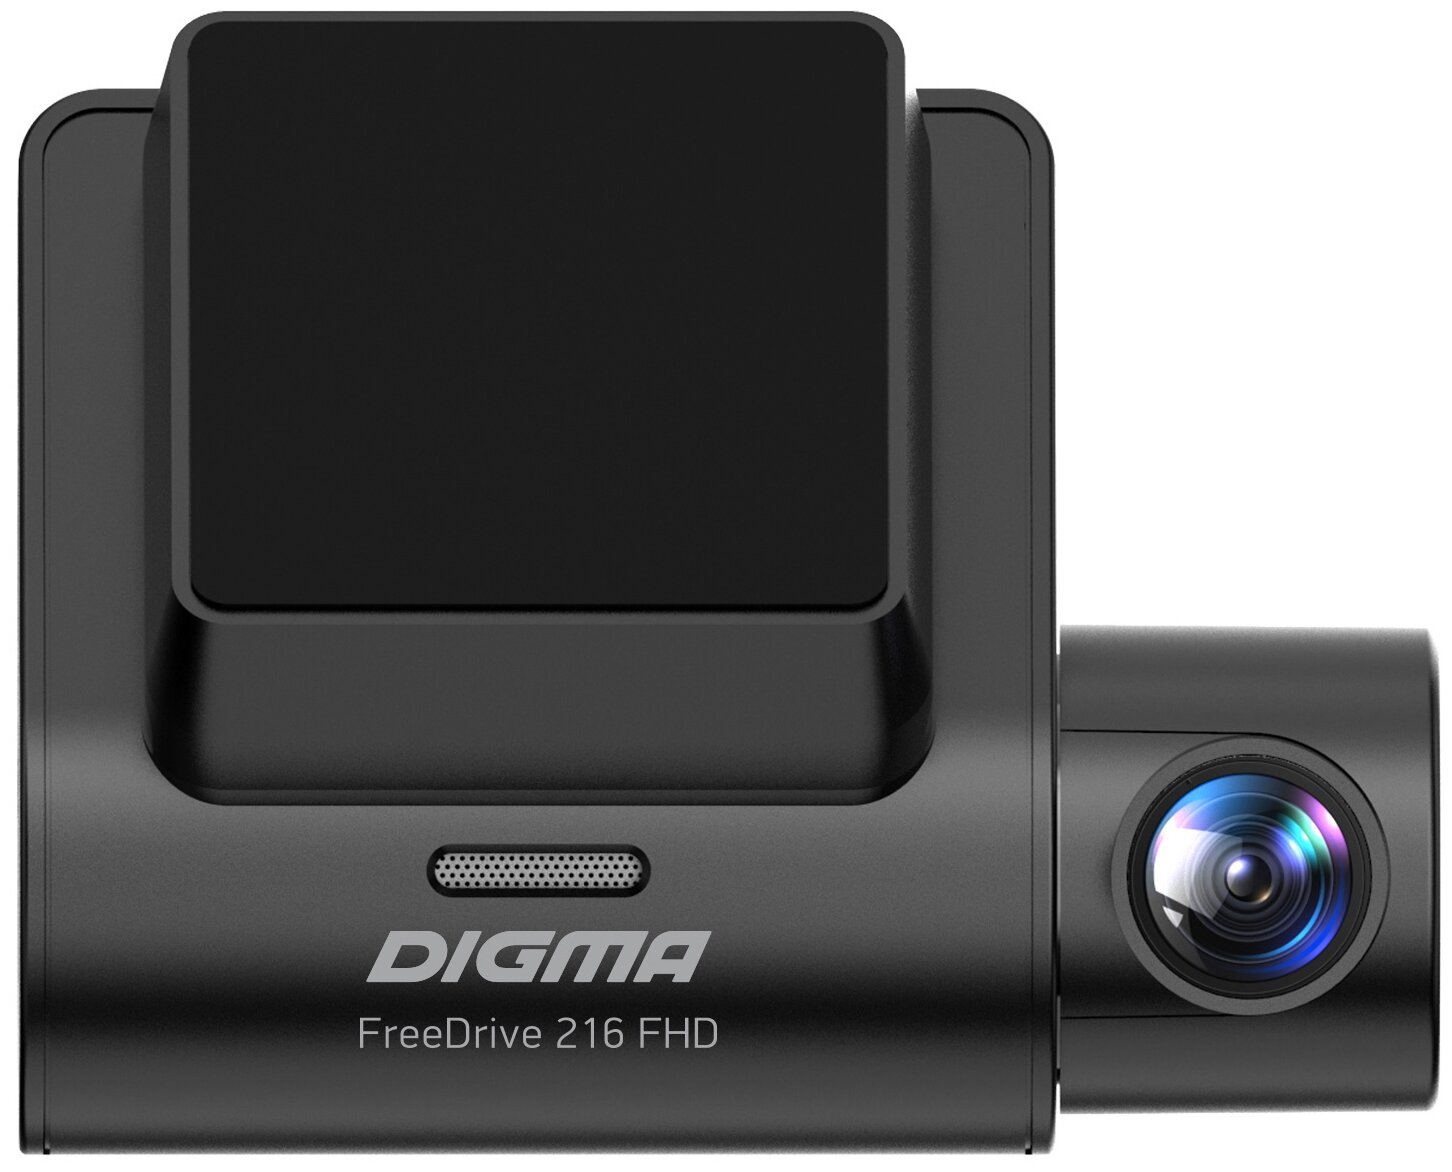 Видеорегистратор Digma FreeDrive 216 FHD черный (JL5701) видеорегистратор digma freedrive 606 mirror dual черный 2mpix 1080x1920 1080p 170гр gp6247